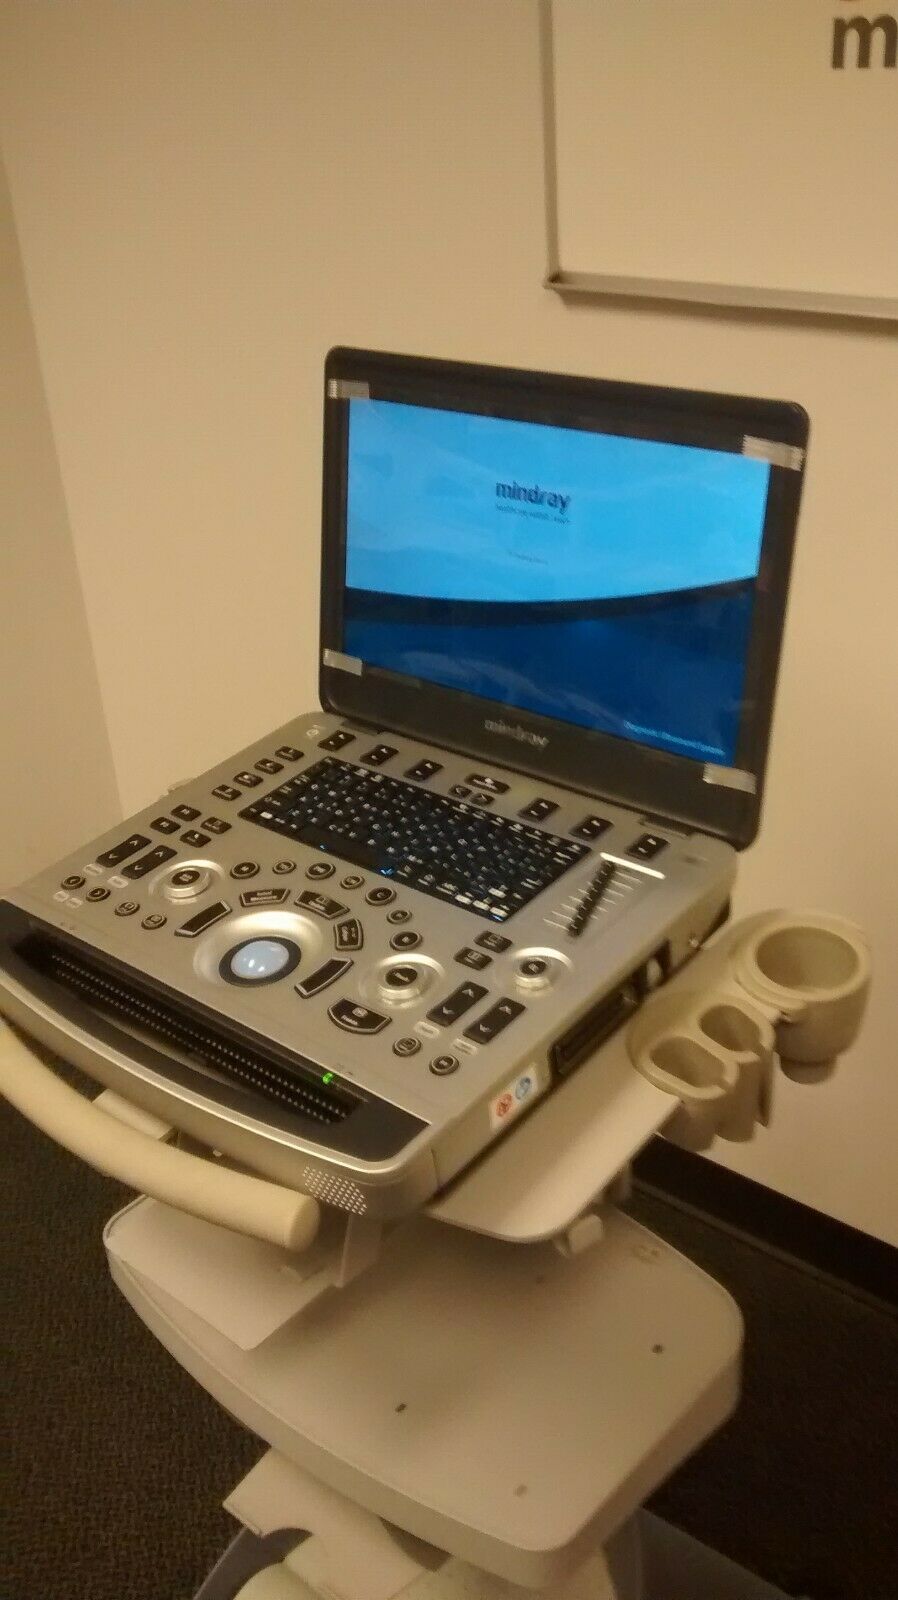 Mindray M9 Ultrasound System